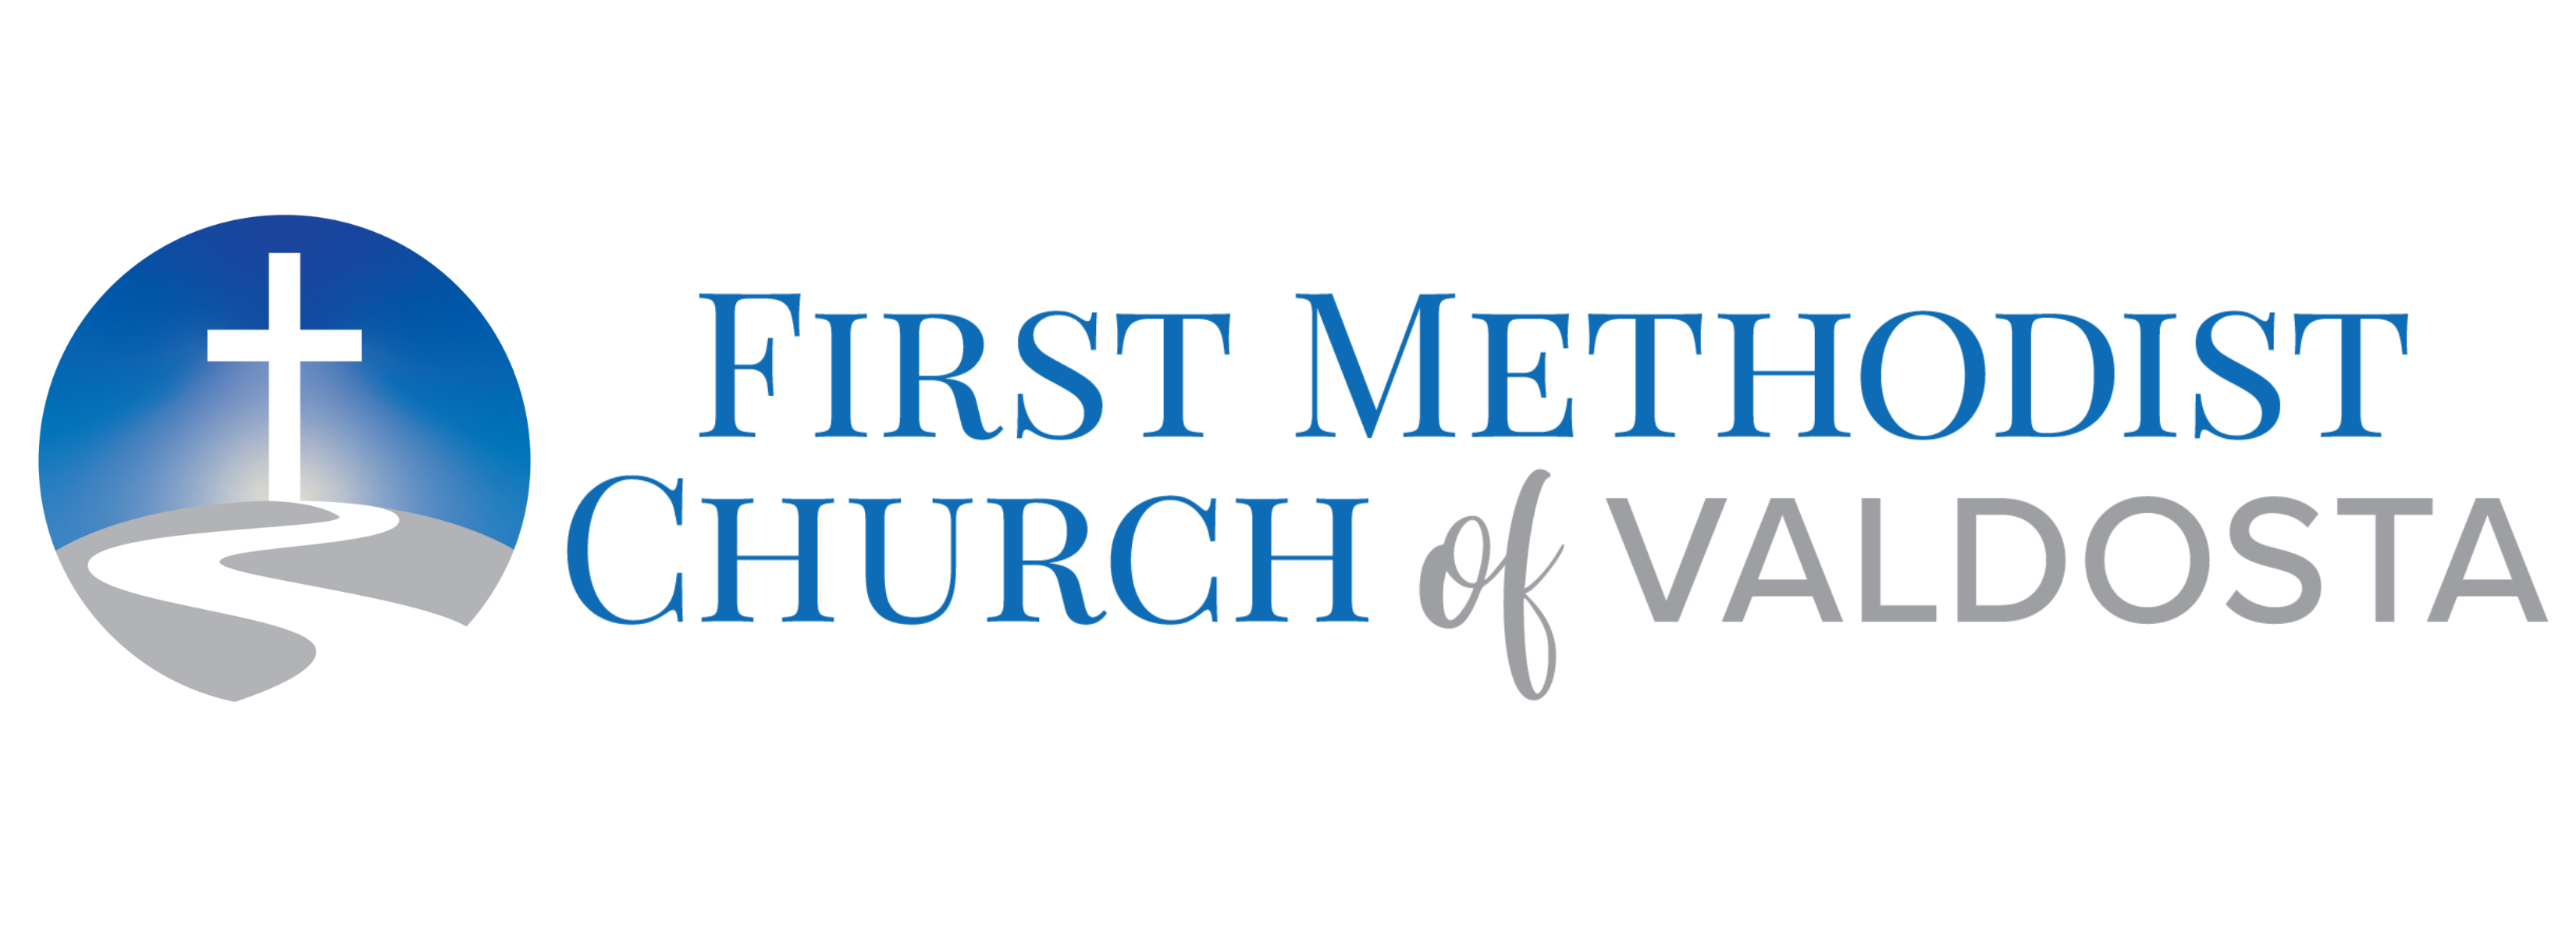 First Methodist Church of Valdosta